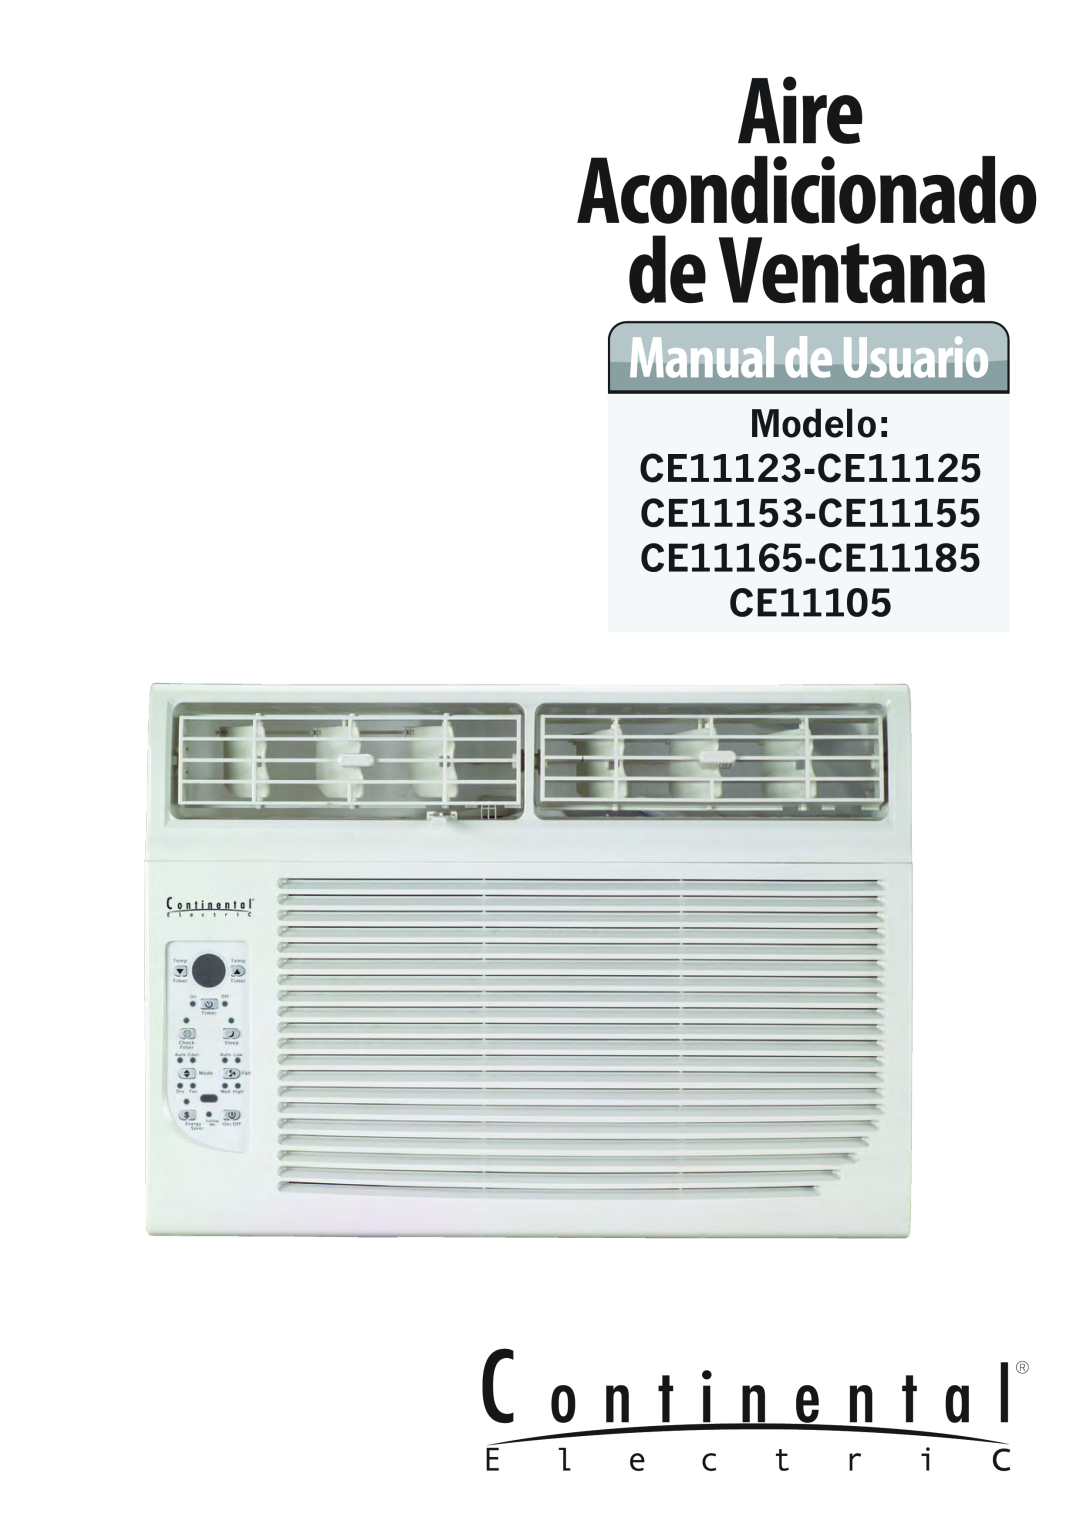 Continental Electric CE11185, CE11155, CE11125, CE11153, CE11105, CE11165 Aire, de Ventana, Acondicionado, Manual de Usuario 